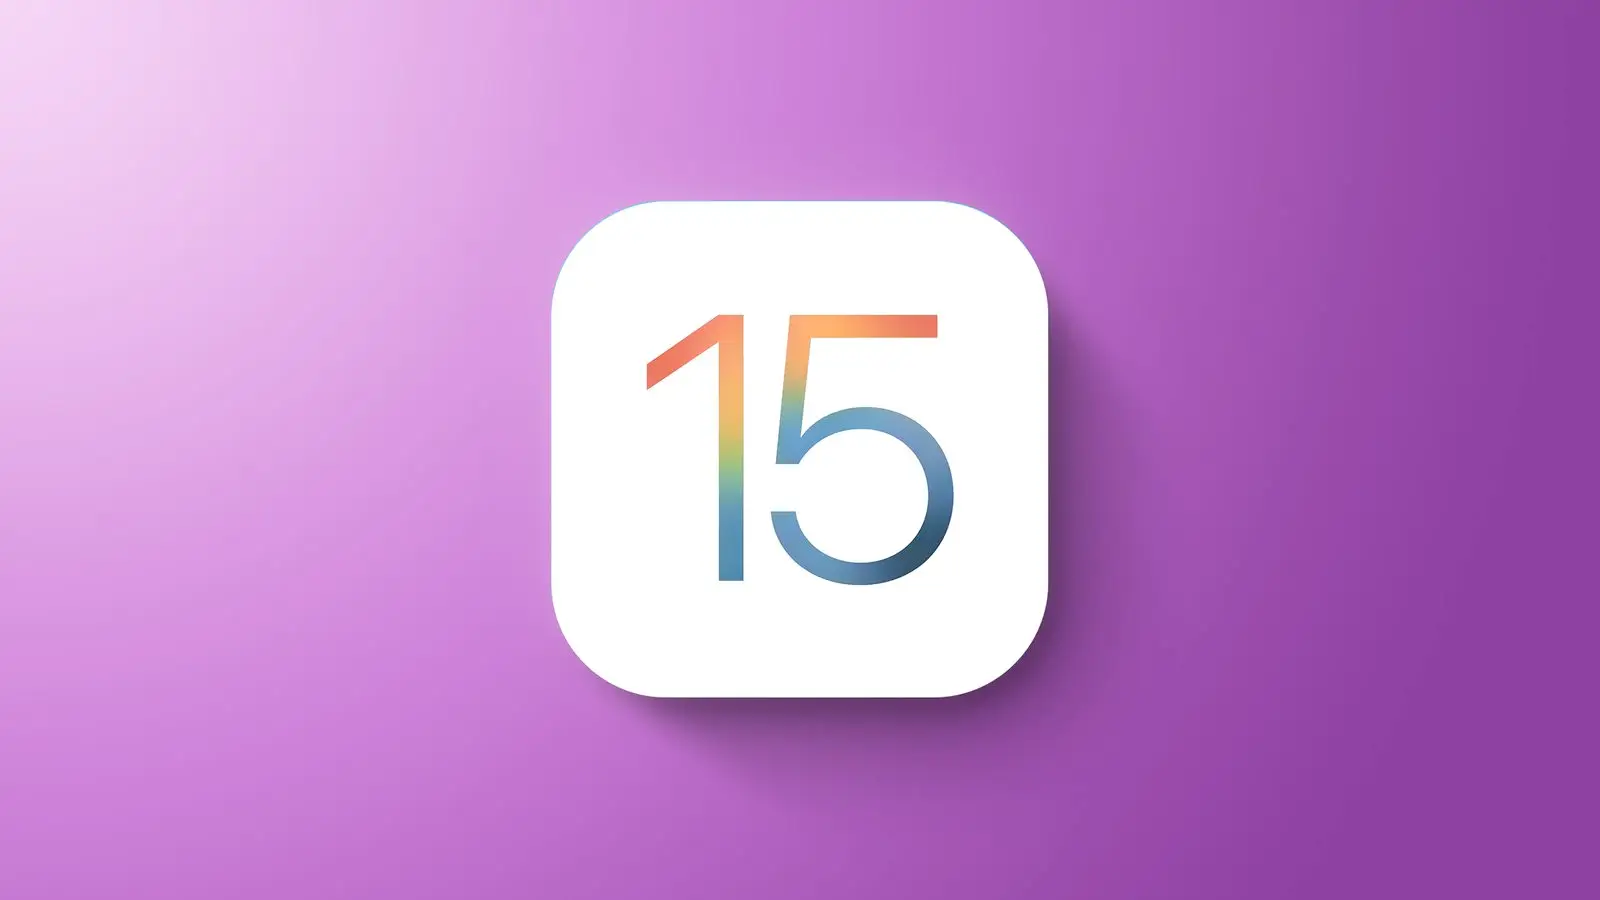 Rilasciato iOS 15.6.1 È necessario installarlo immediatamente iPhone iPad